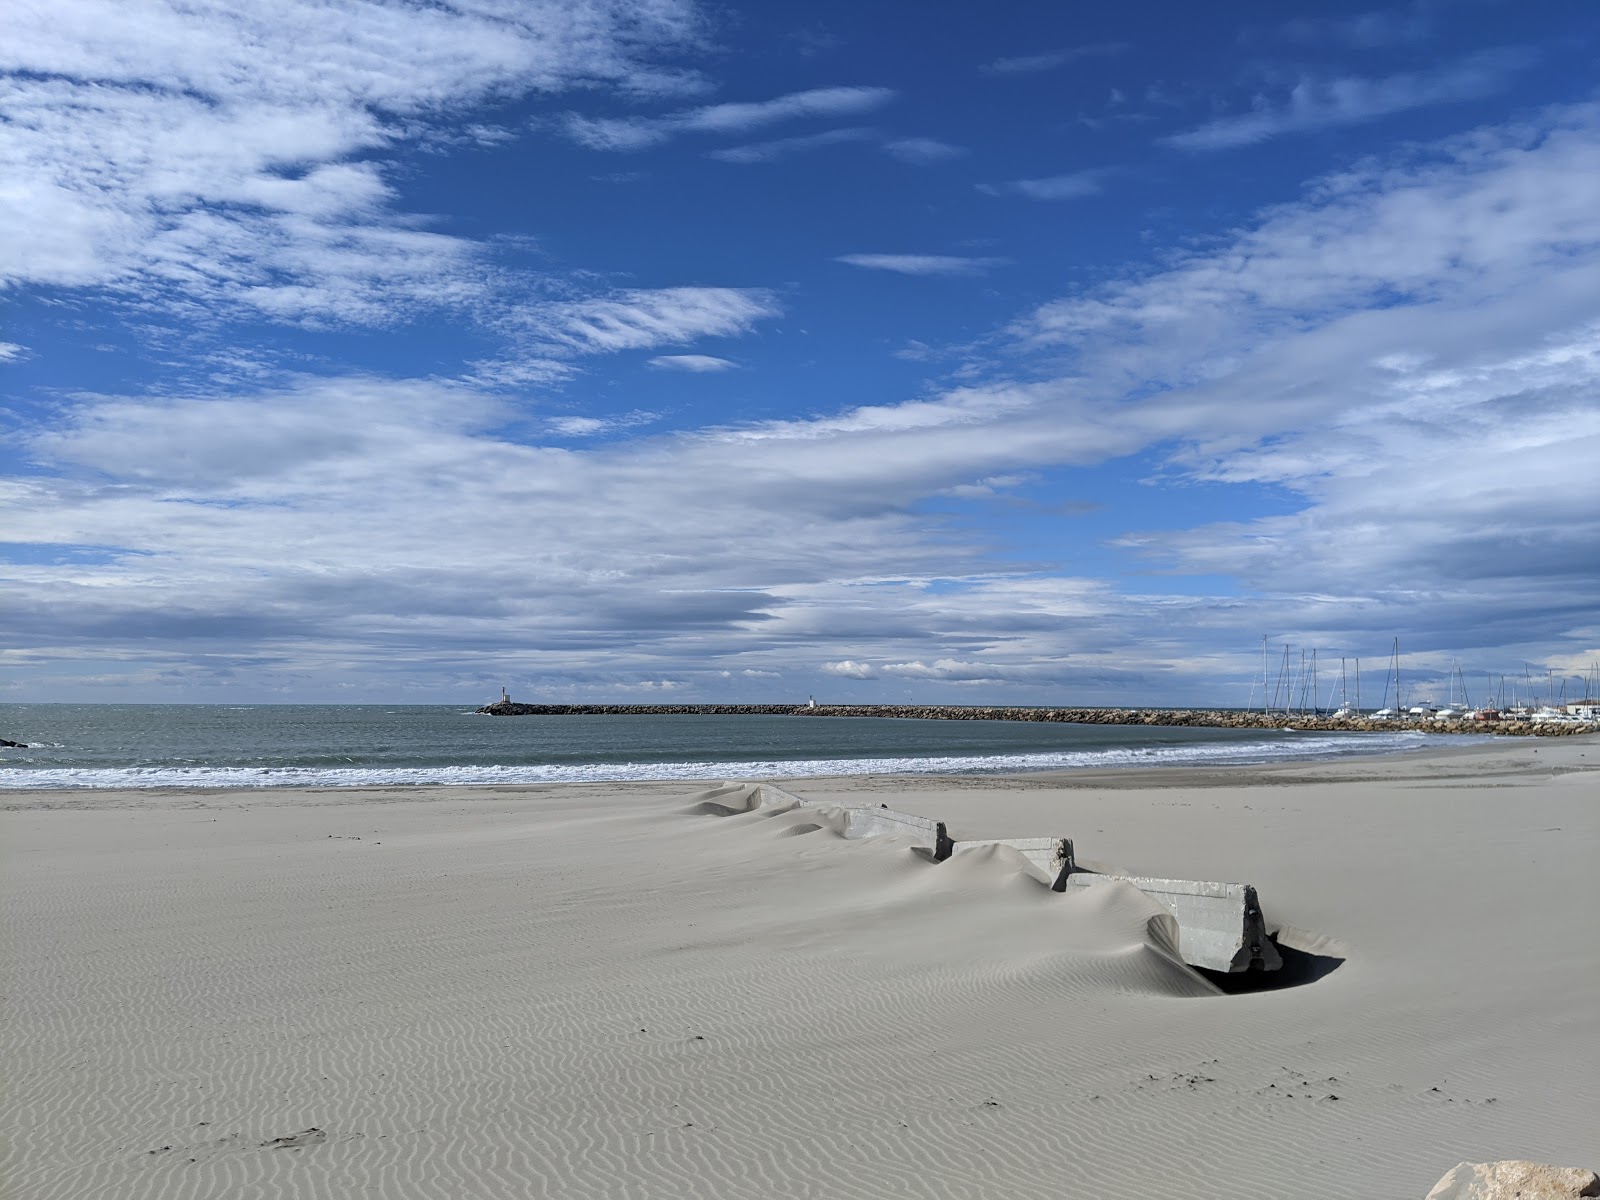 Fotografie cu Arenes beach cu o suprafață de nisip fin strălucitor